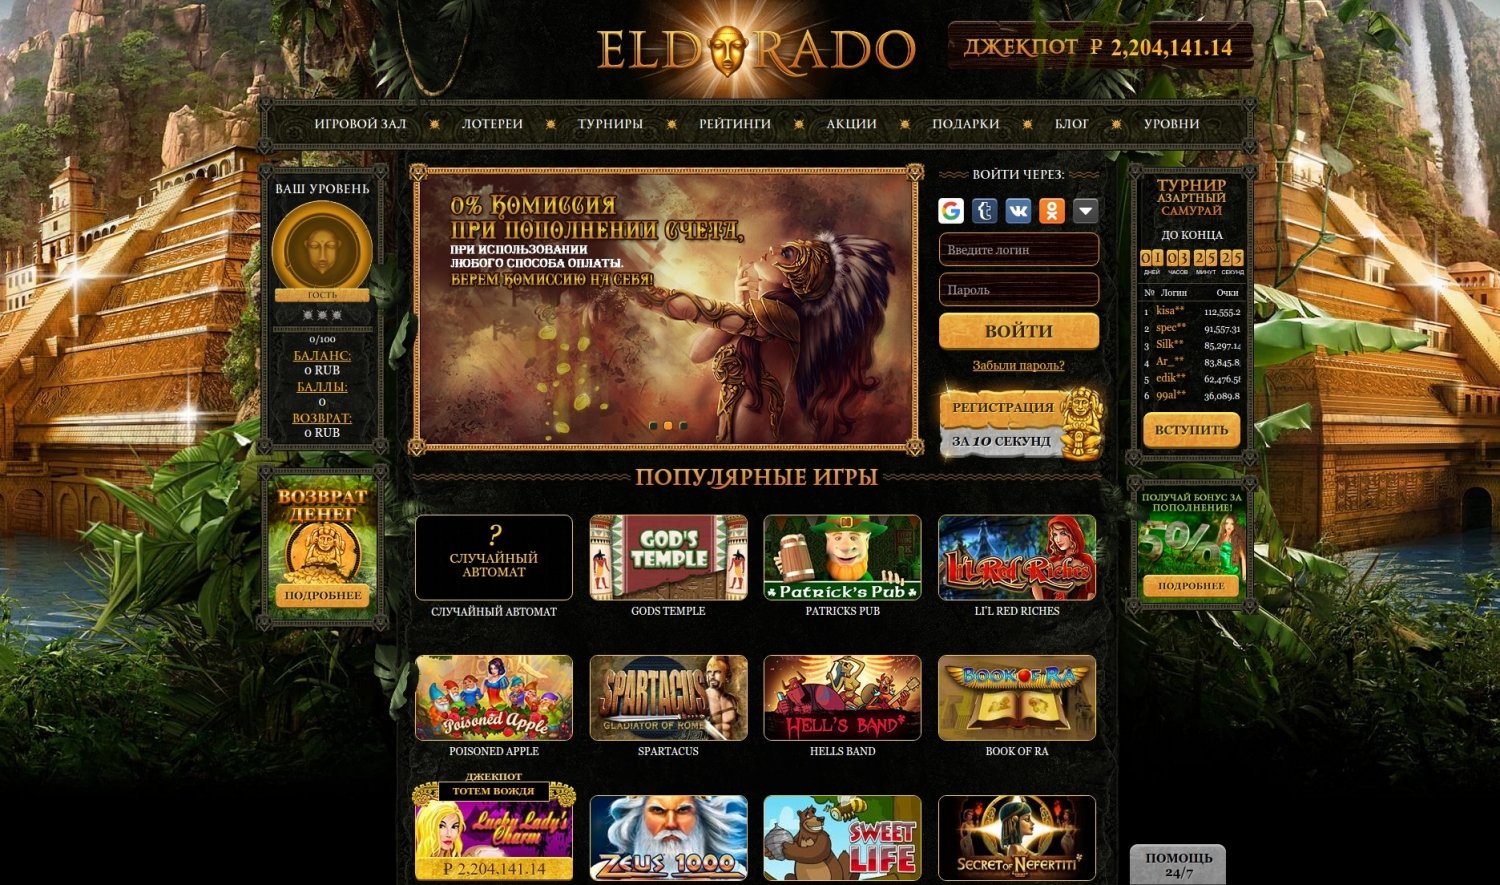 Eldorado casino online зеркало как ограбить казино вулкан